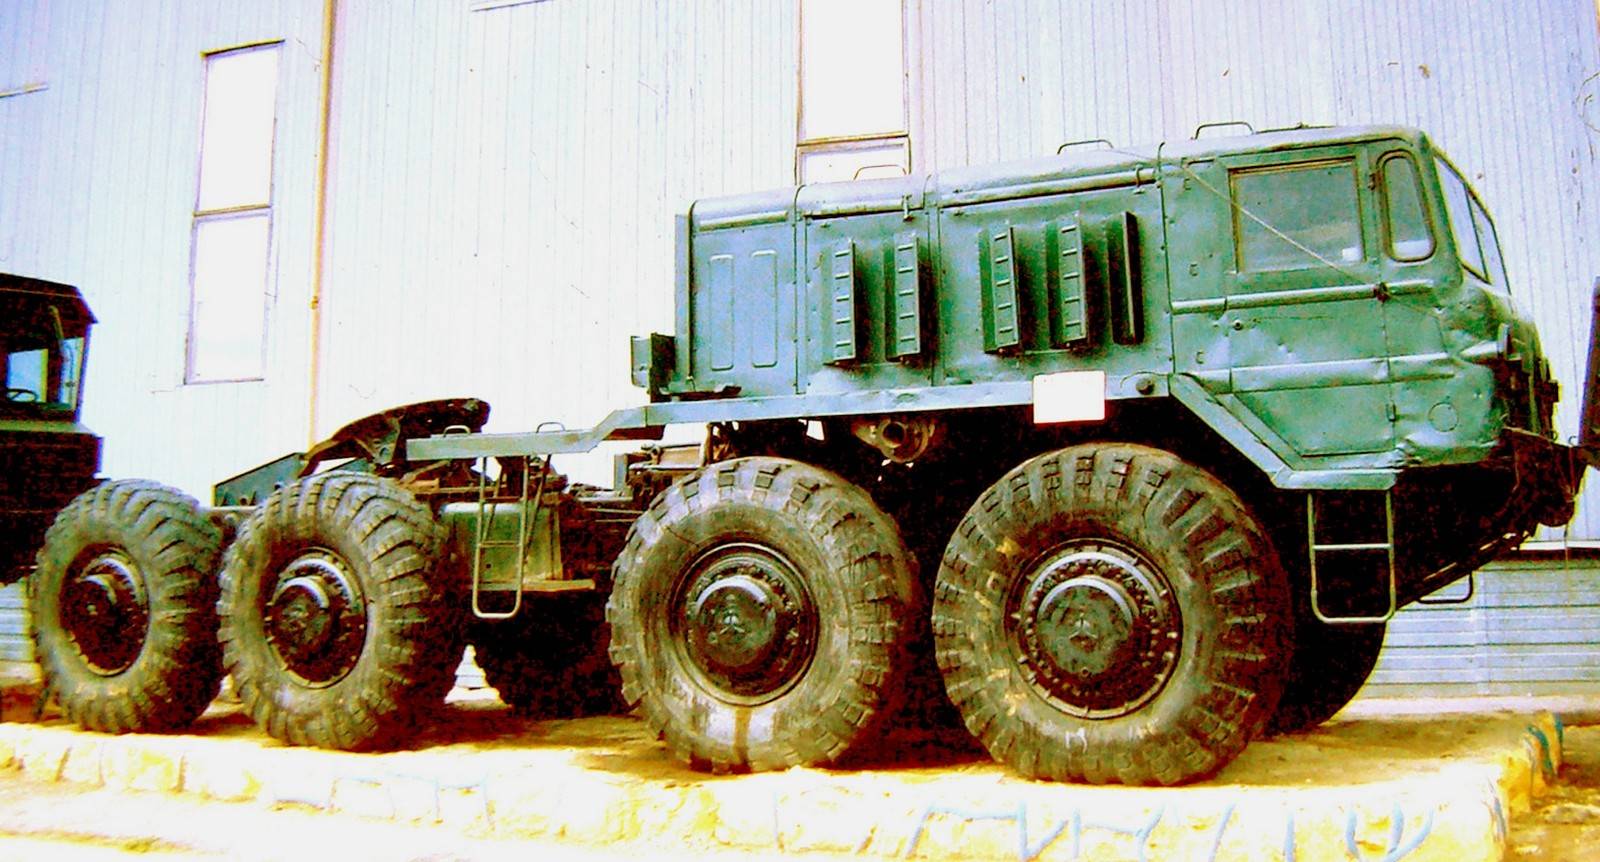 Маз 537 — военный тягач для широкого применения